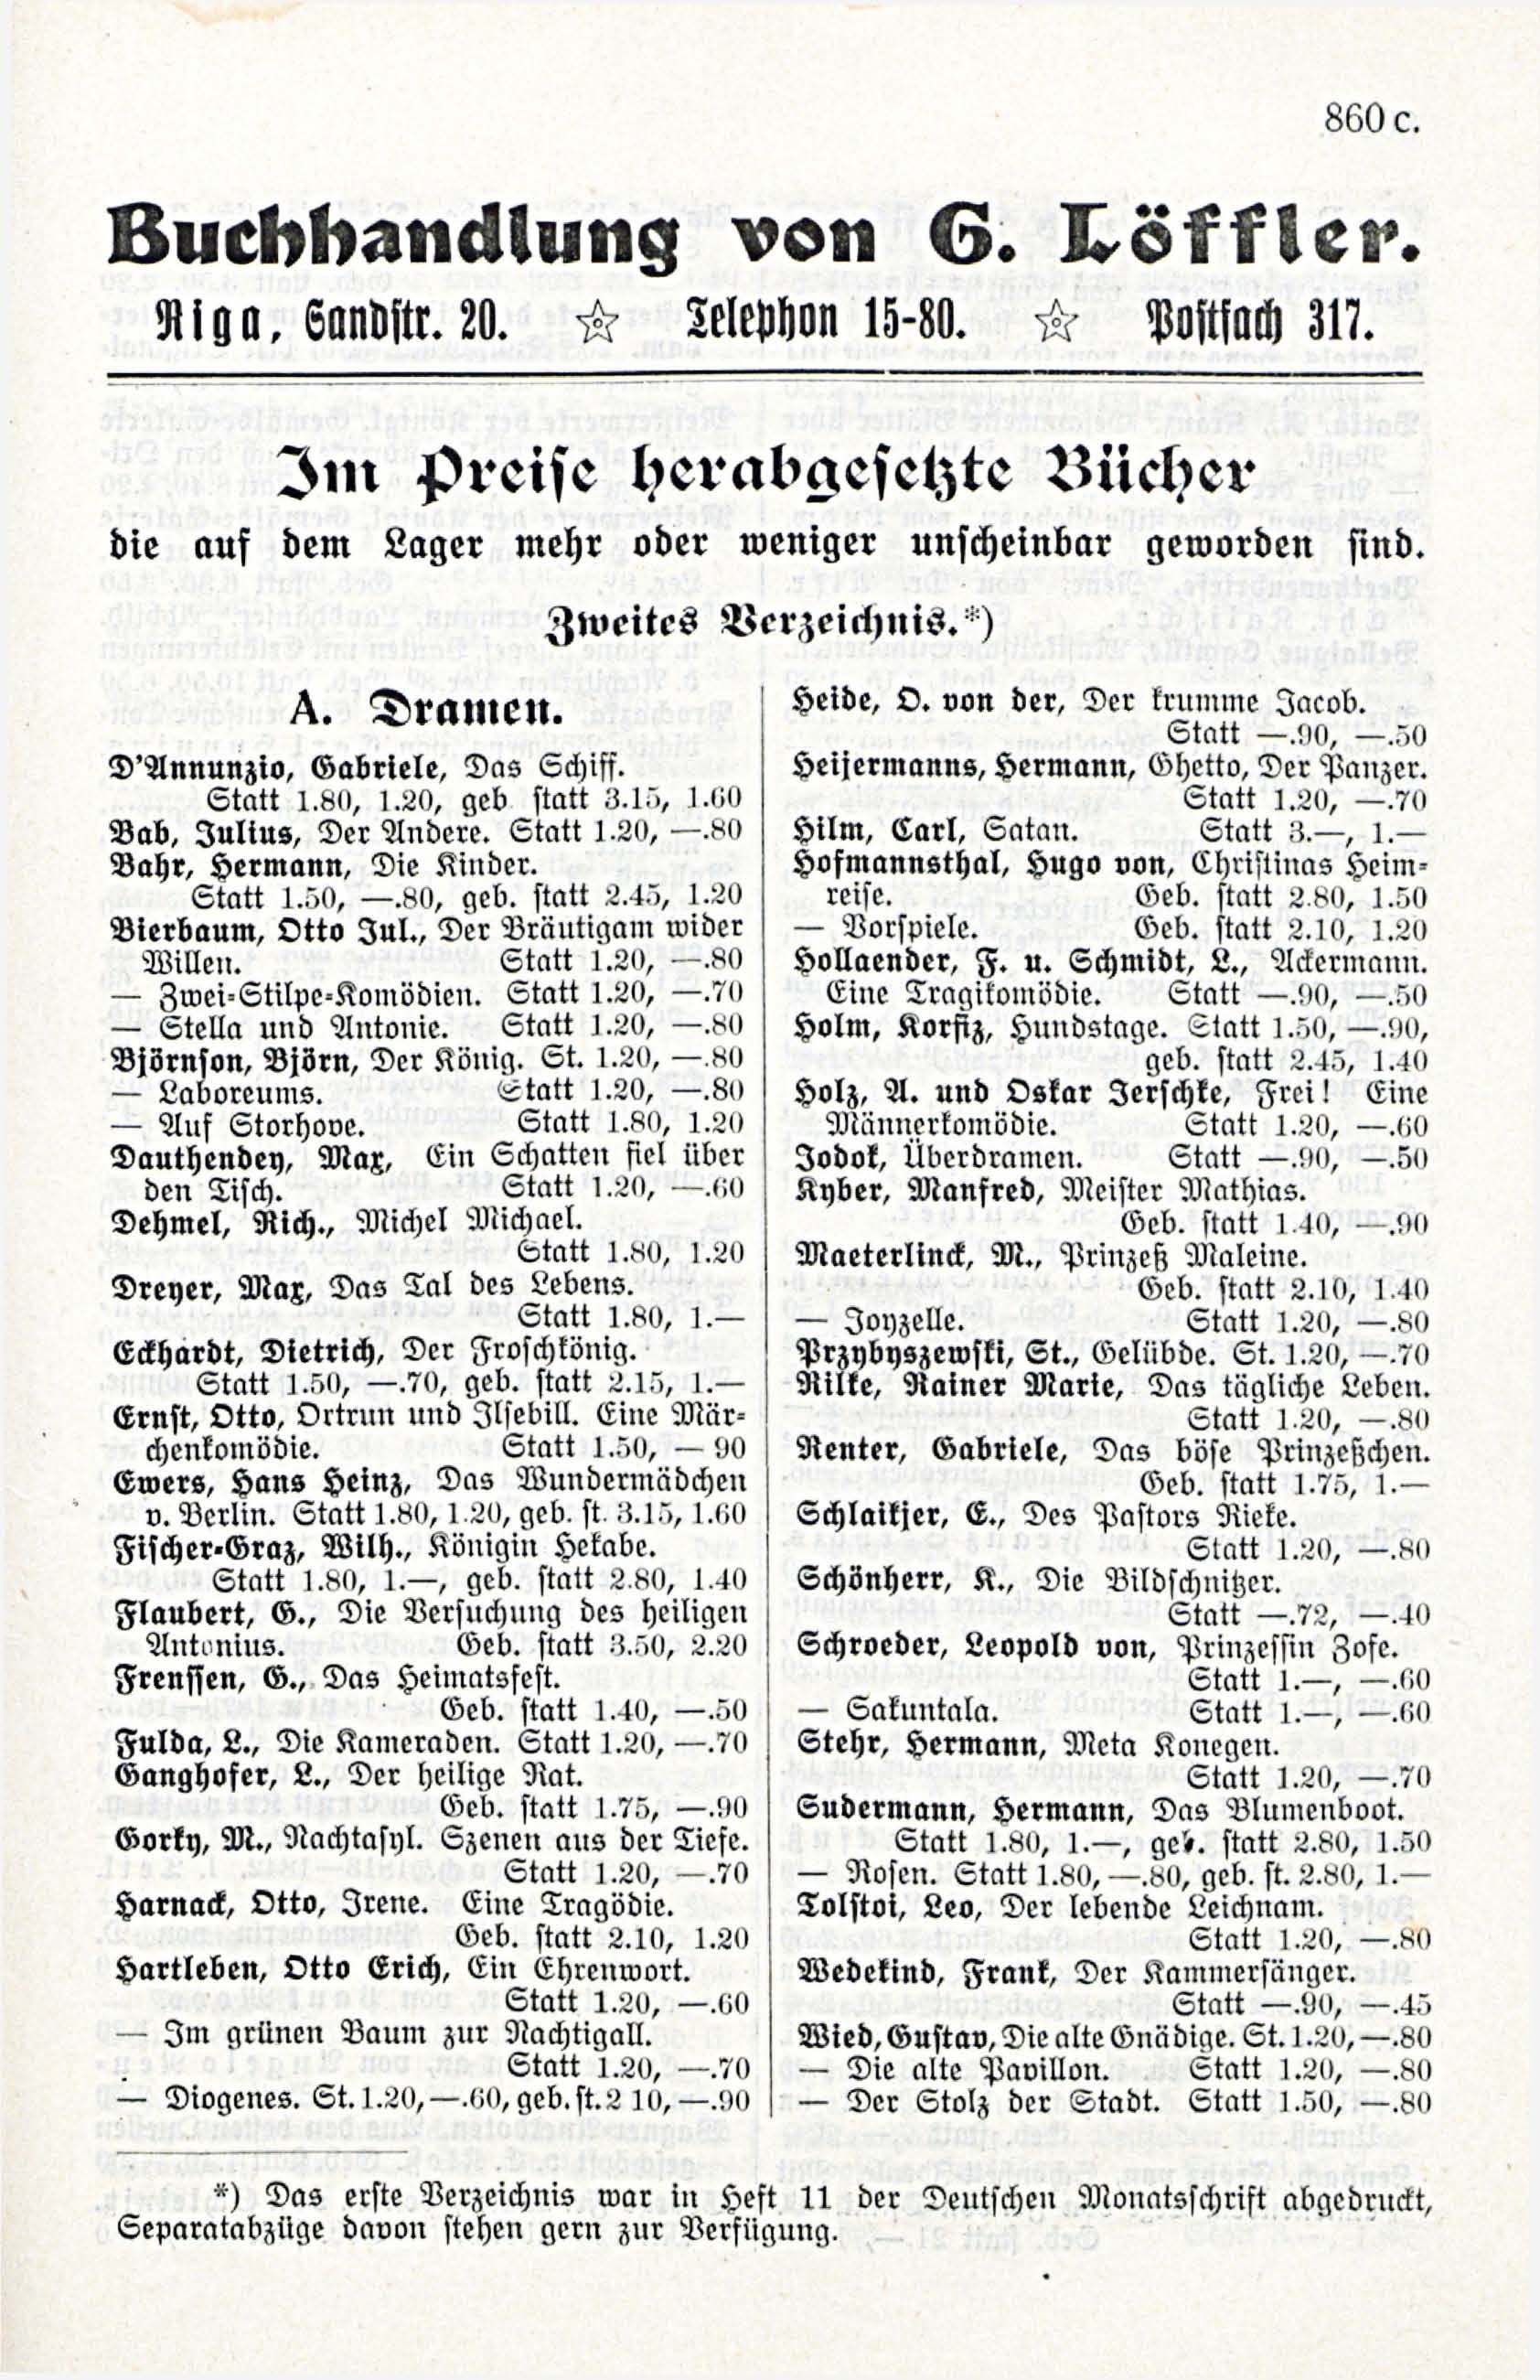 Deutsche Monatsschrift für Russland [3/12] (1914) | 77. (861) Main body of text